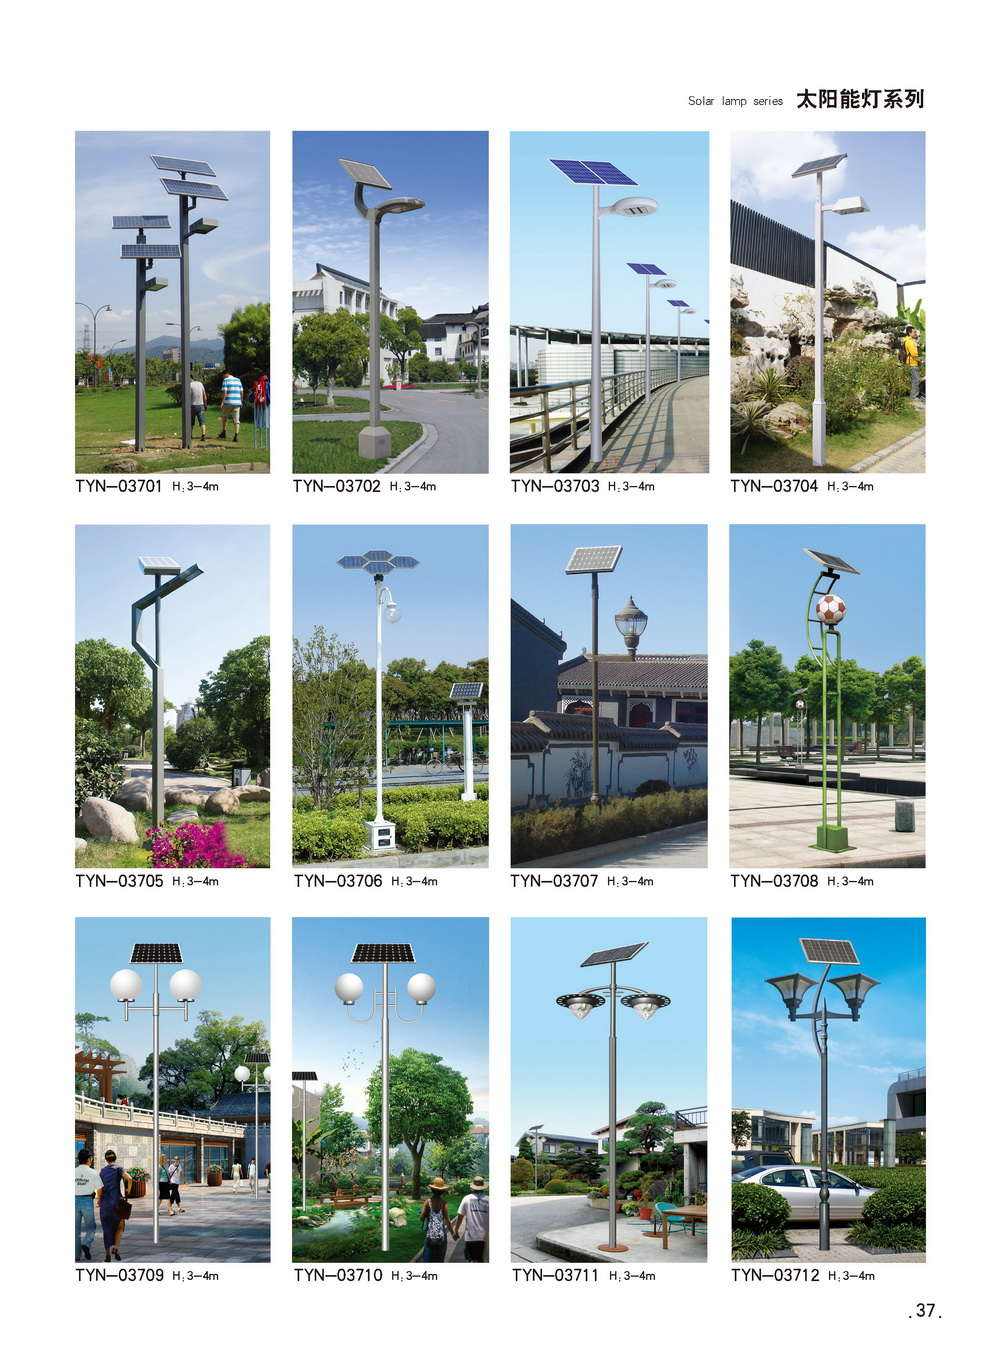 Solar courtyard light, LED aesthetic lighting, 3-meter-4 meter street light, market light, park light